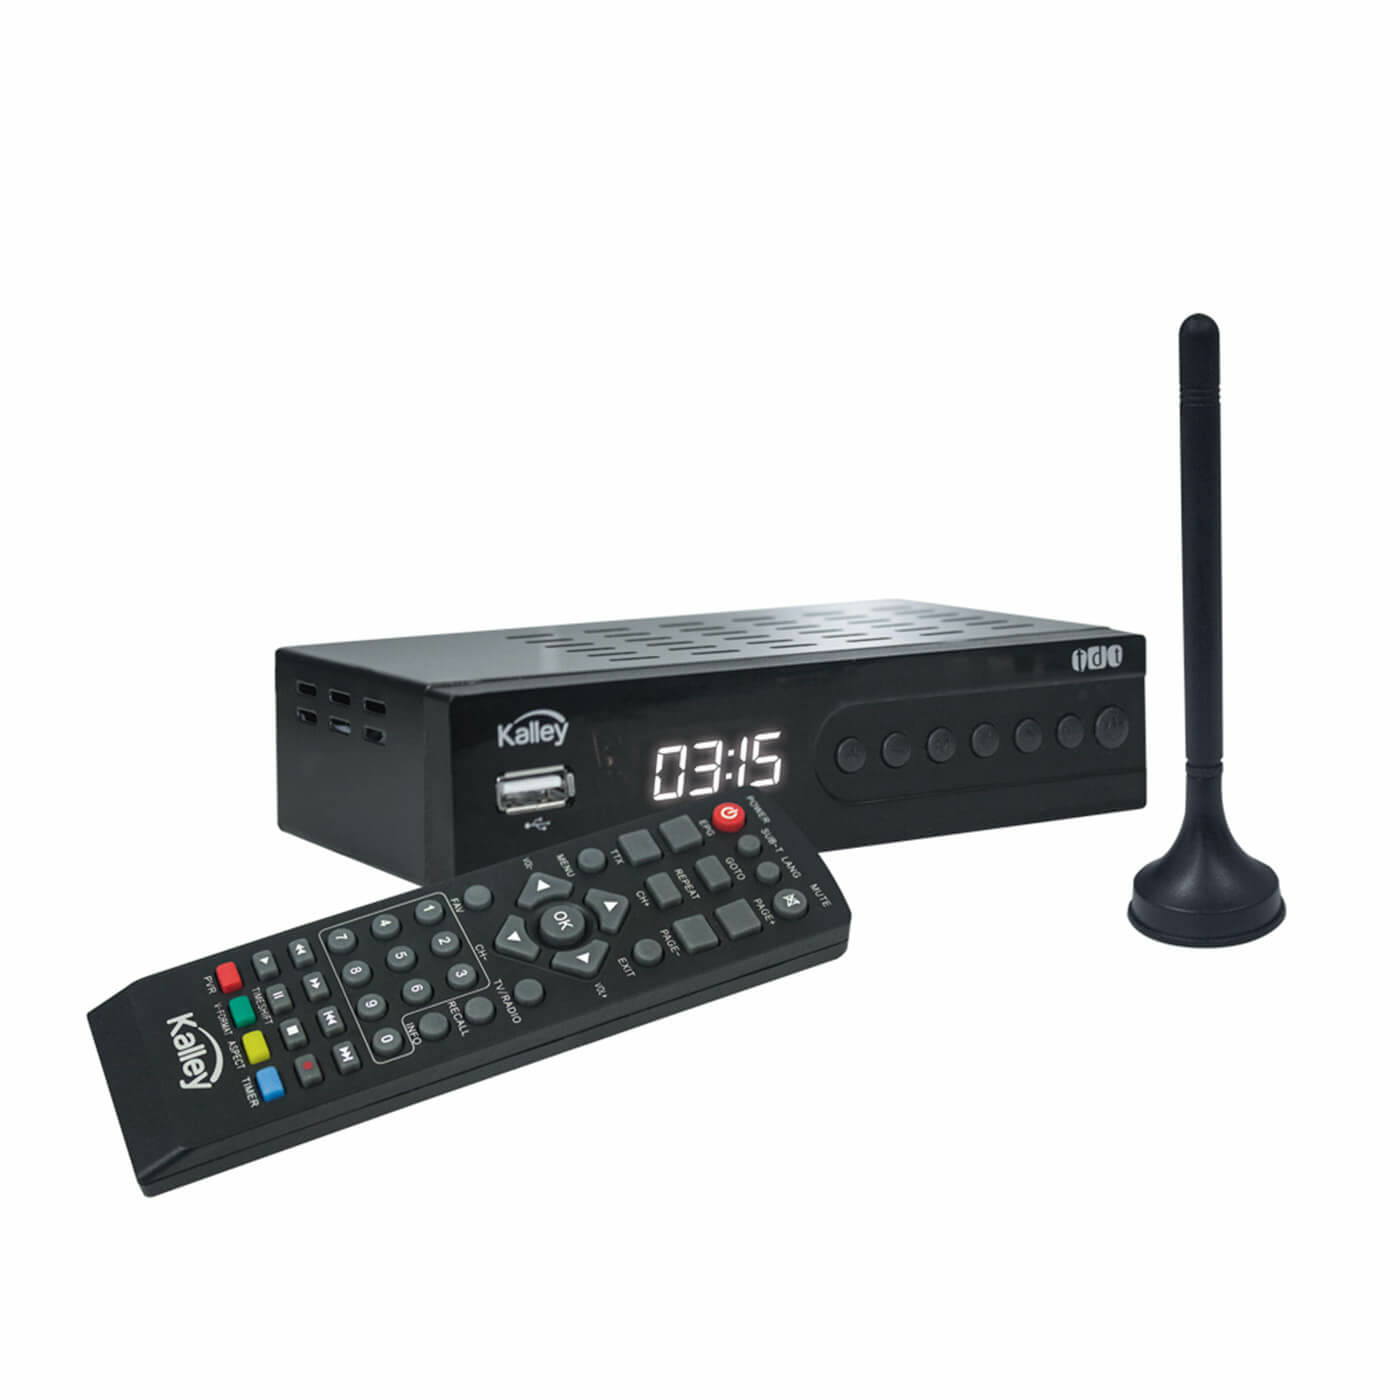 Control Universal Decodificador TDT Facil Programa TV DVB-T2